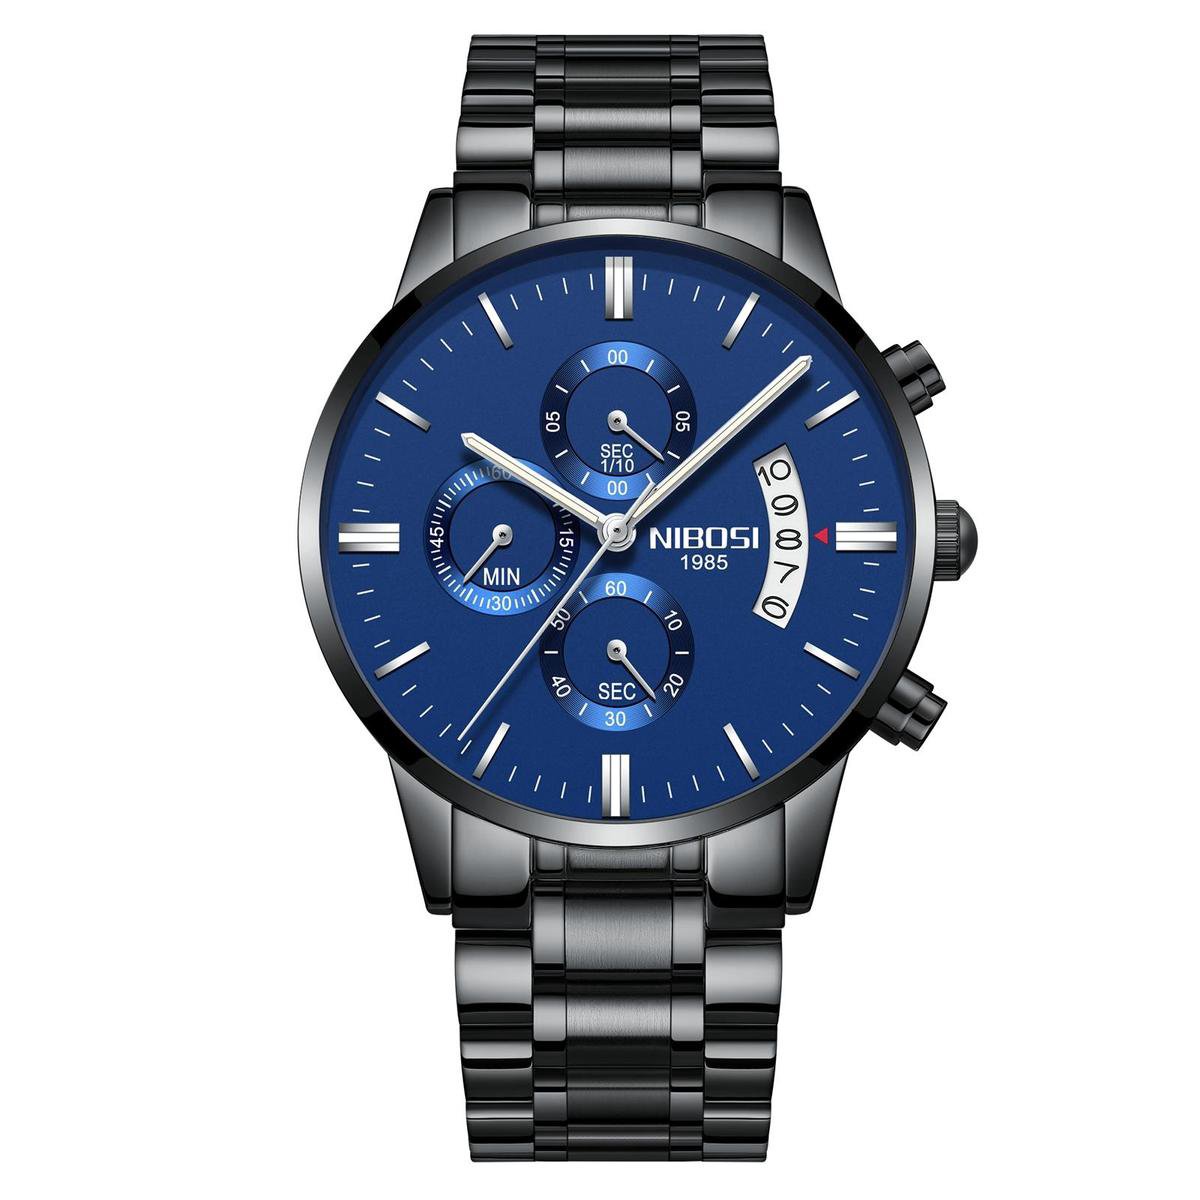 NIBOSI Horloges voor mannen - Horloge mannen - Luxe Zwart-Blauw Design - Heren horloge - Ø 42 mm - Zwart-Blauw - Roestvrij Staal - Waterdicht tot 3 bar - Chronograaf - Geschenkset met verstelbare pin